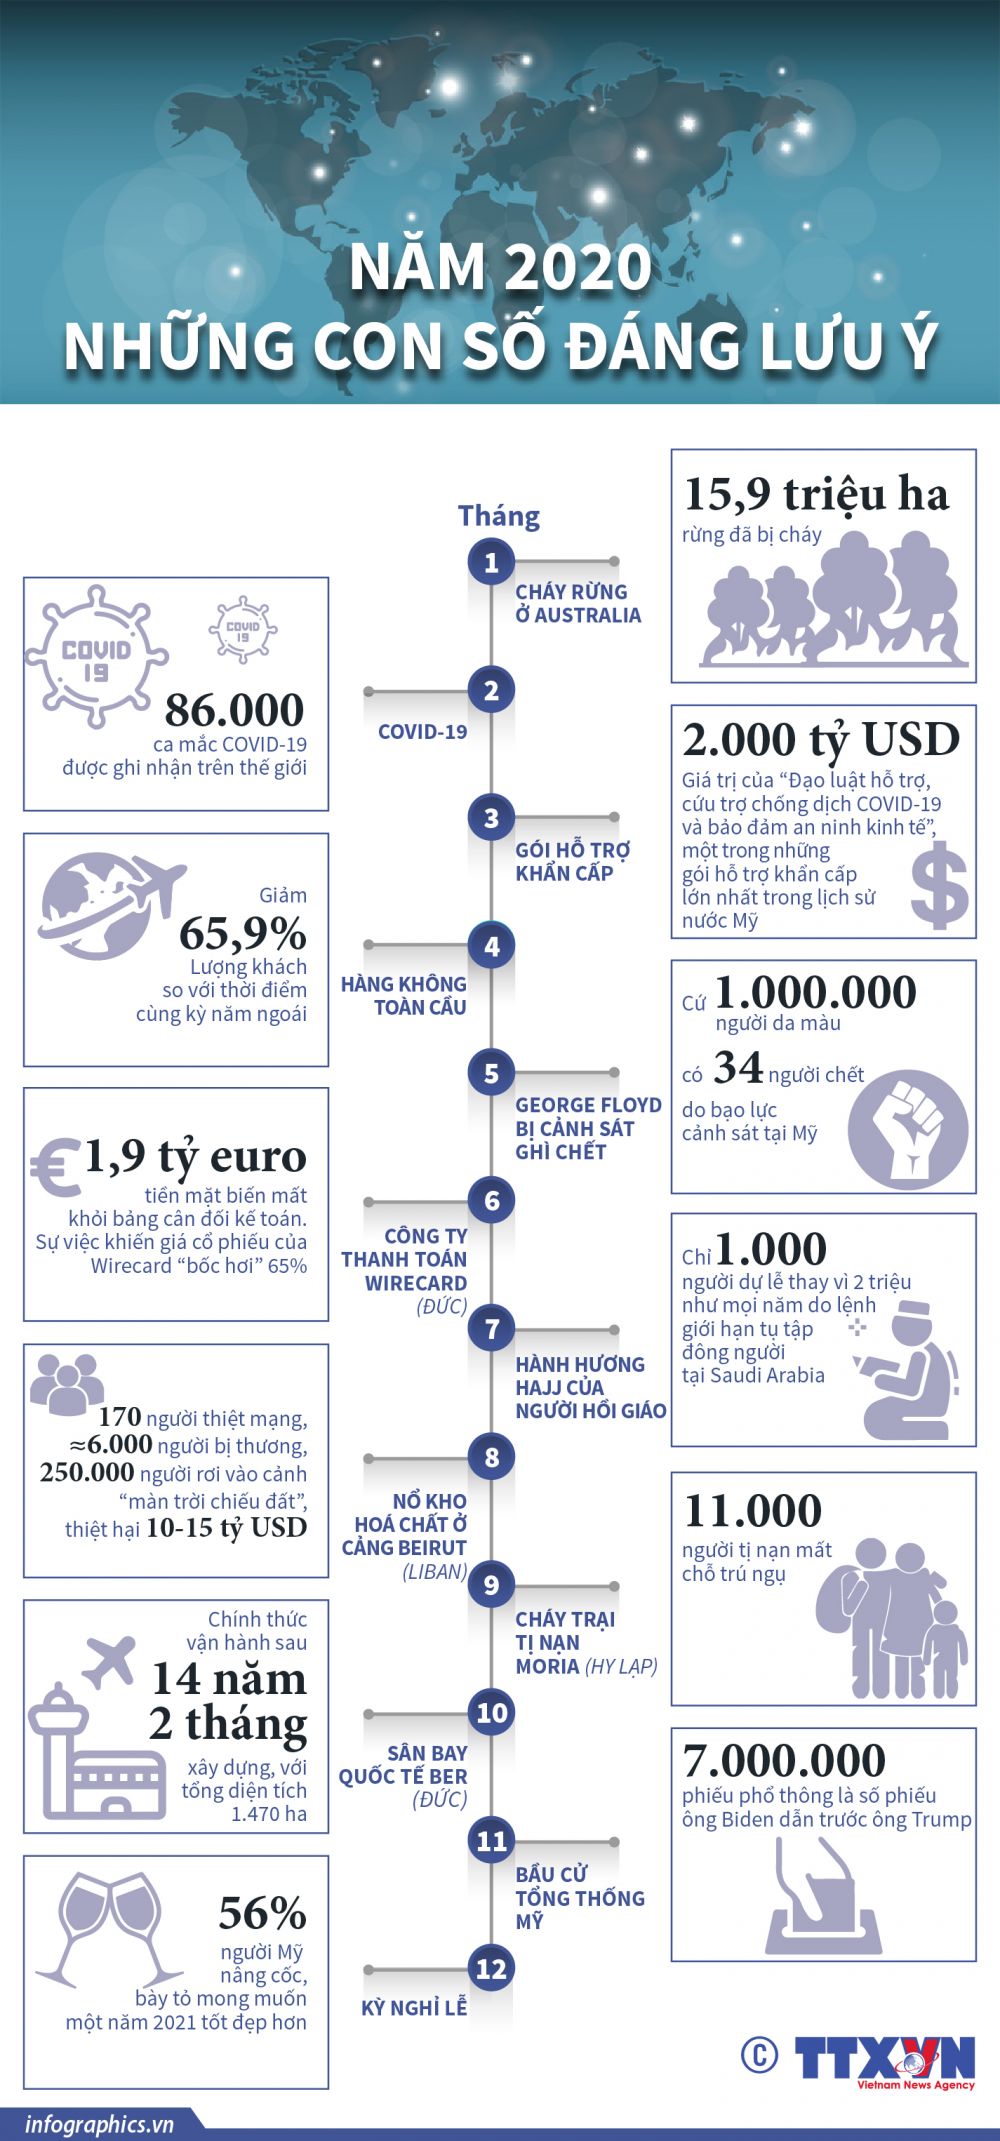 Infographics: Thế giới năm 2020 qua những con số biết nói